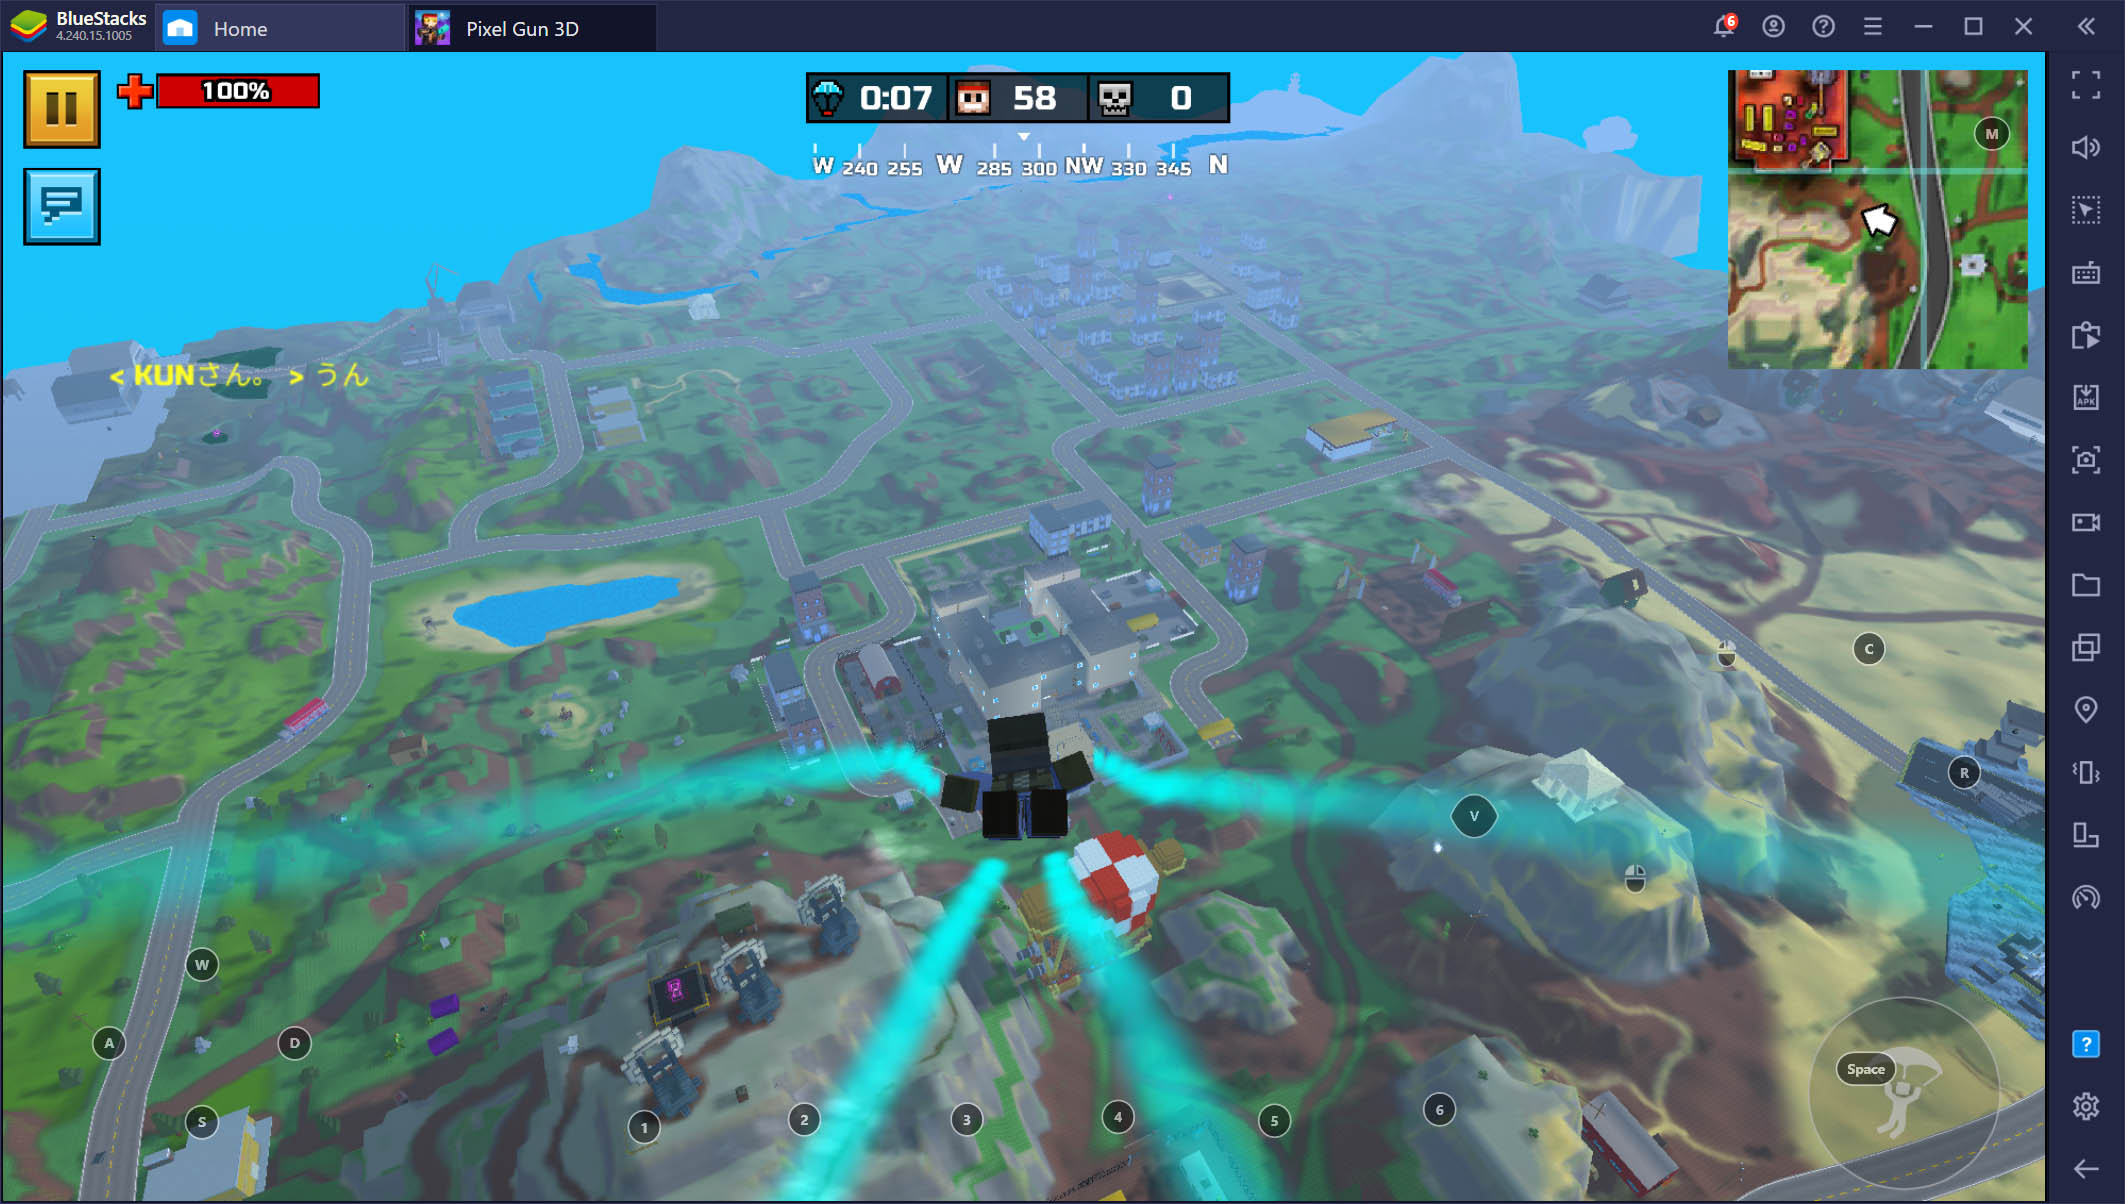 Pixel Gun 3D PC - Besser Ballern mit BlueStacks in diesem Shooter-Spiel